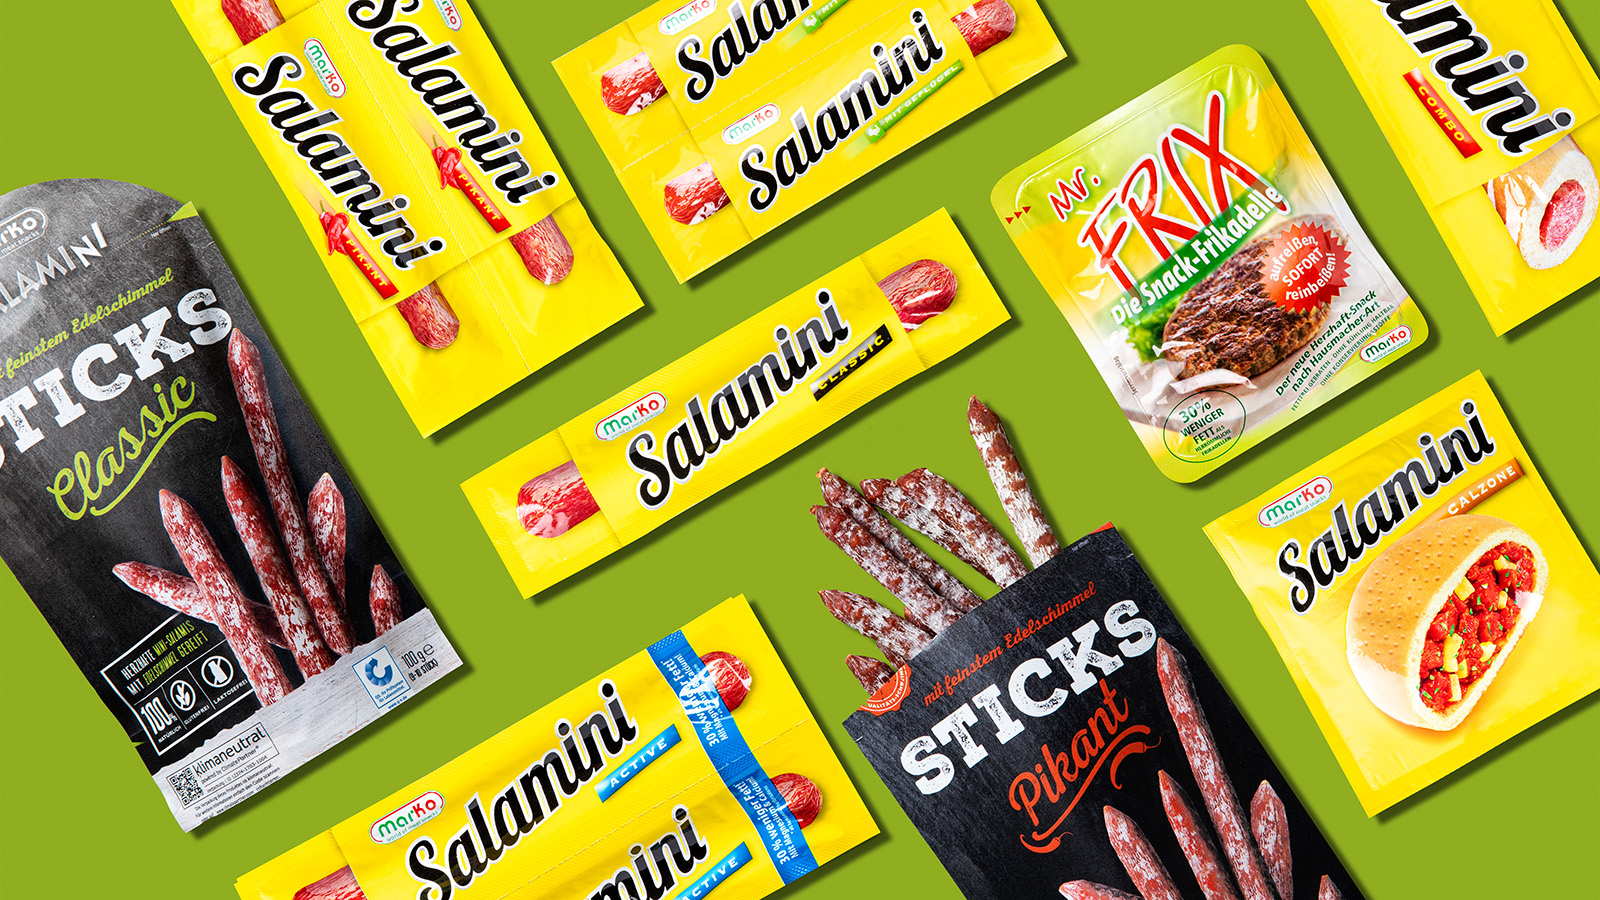 Die herzhafte Snack-Produktwelt von Mar-Ko: Mr. Frix, Salamini, Combo, Calzone